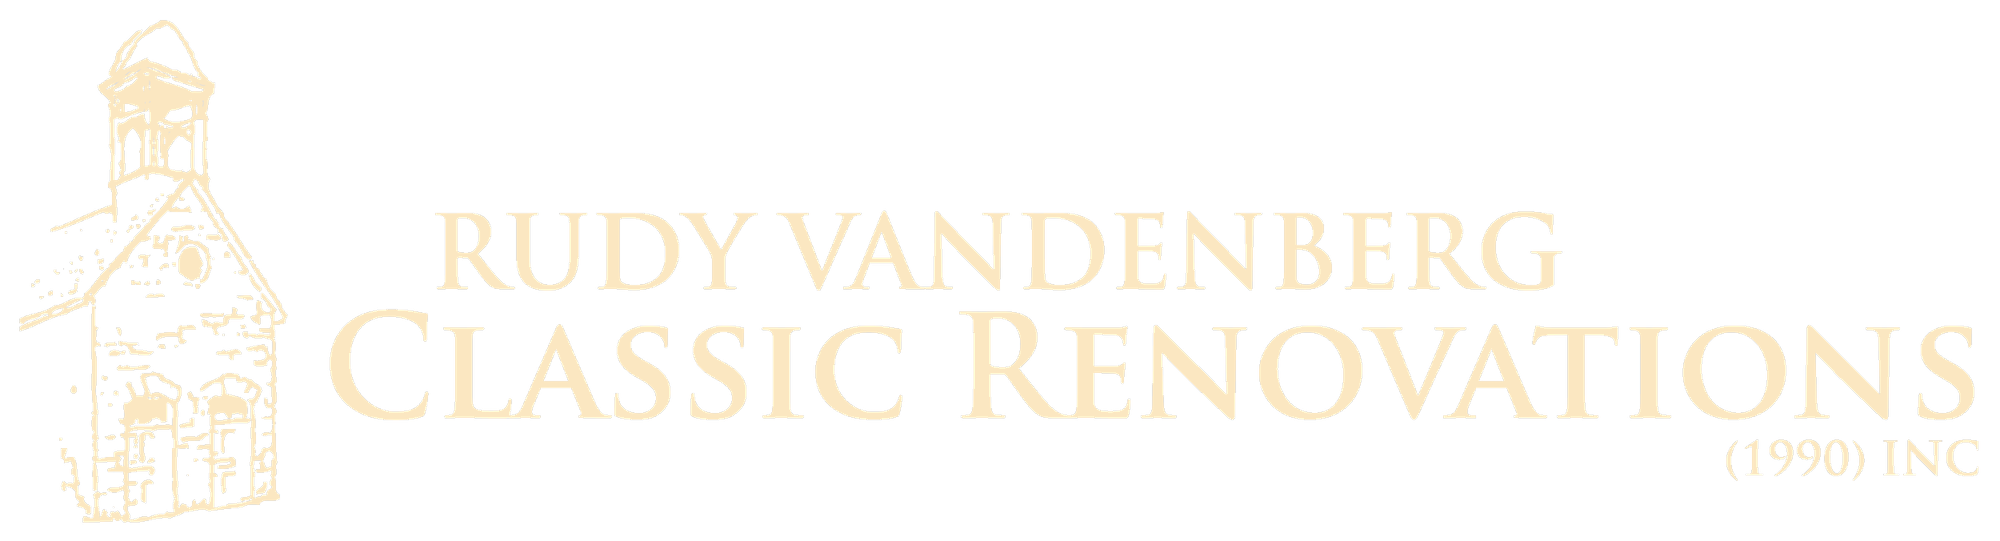 Rudy Vandenberg Classic Renovations